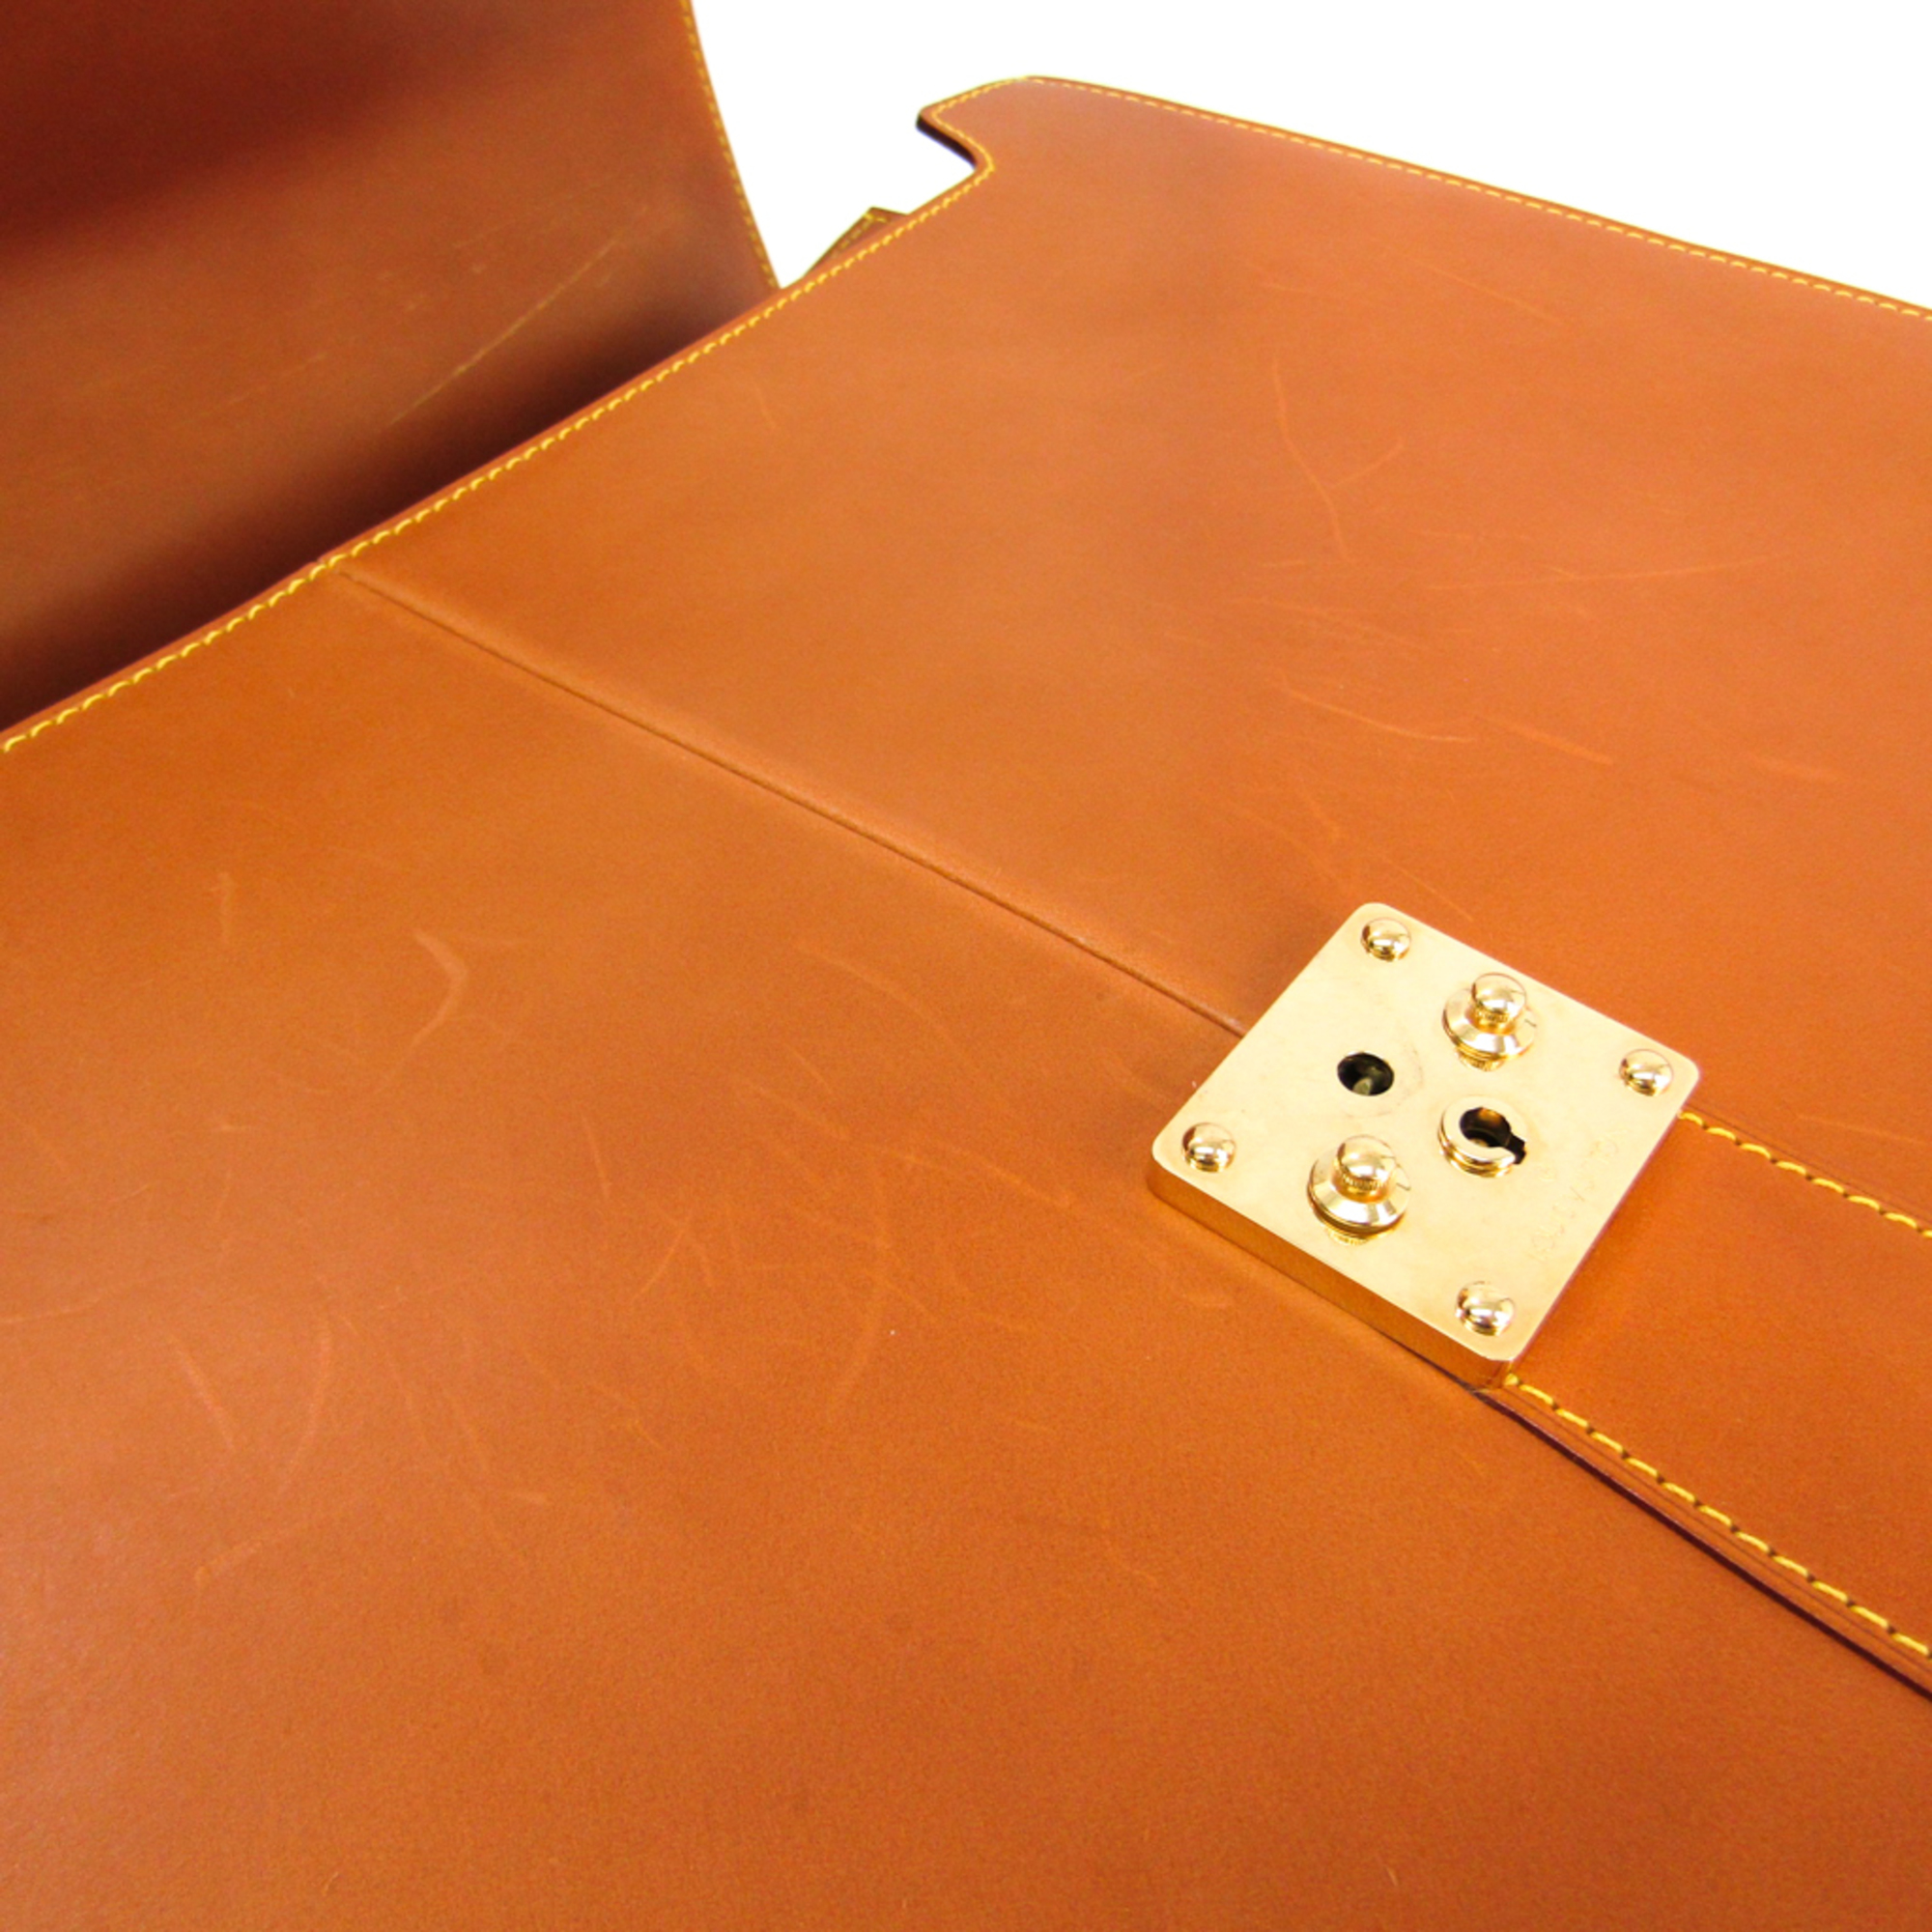 Louis Vuitton Nomad Atacama 3 Compartiments M80313 Men's Briefcase Caramel